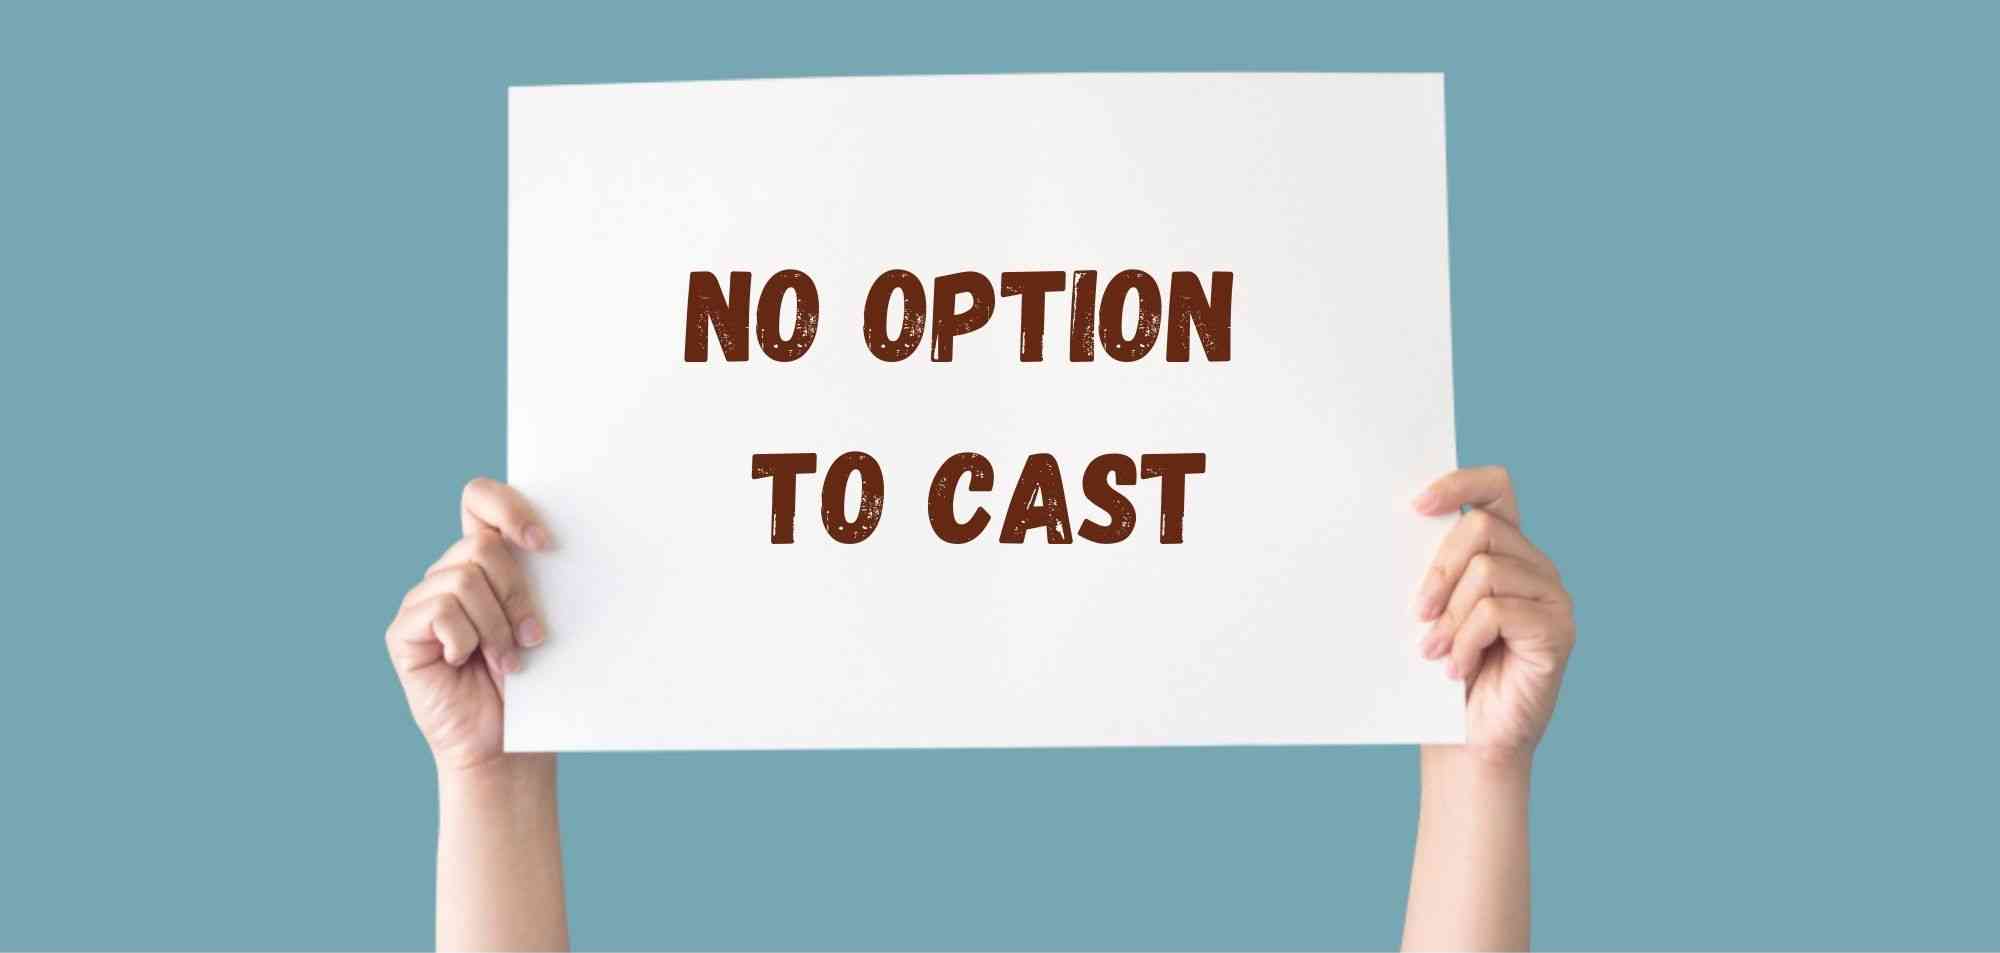 No option to cast